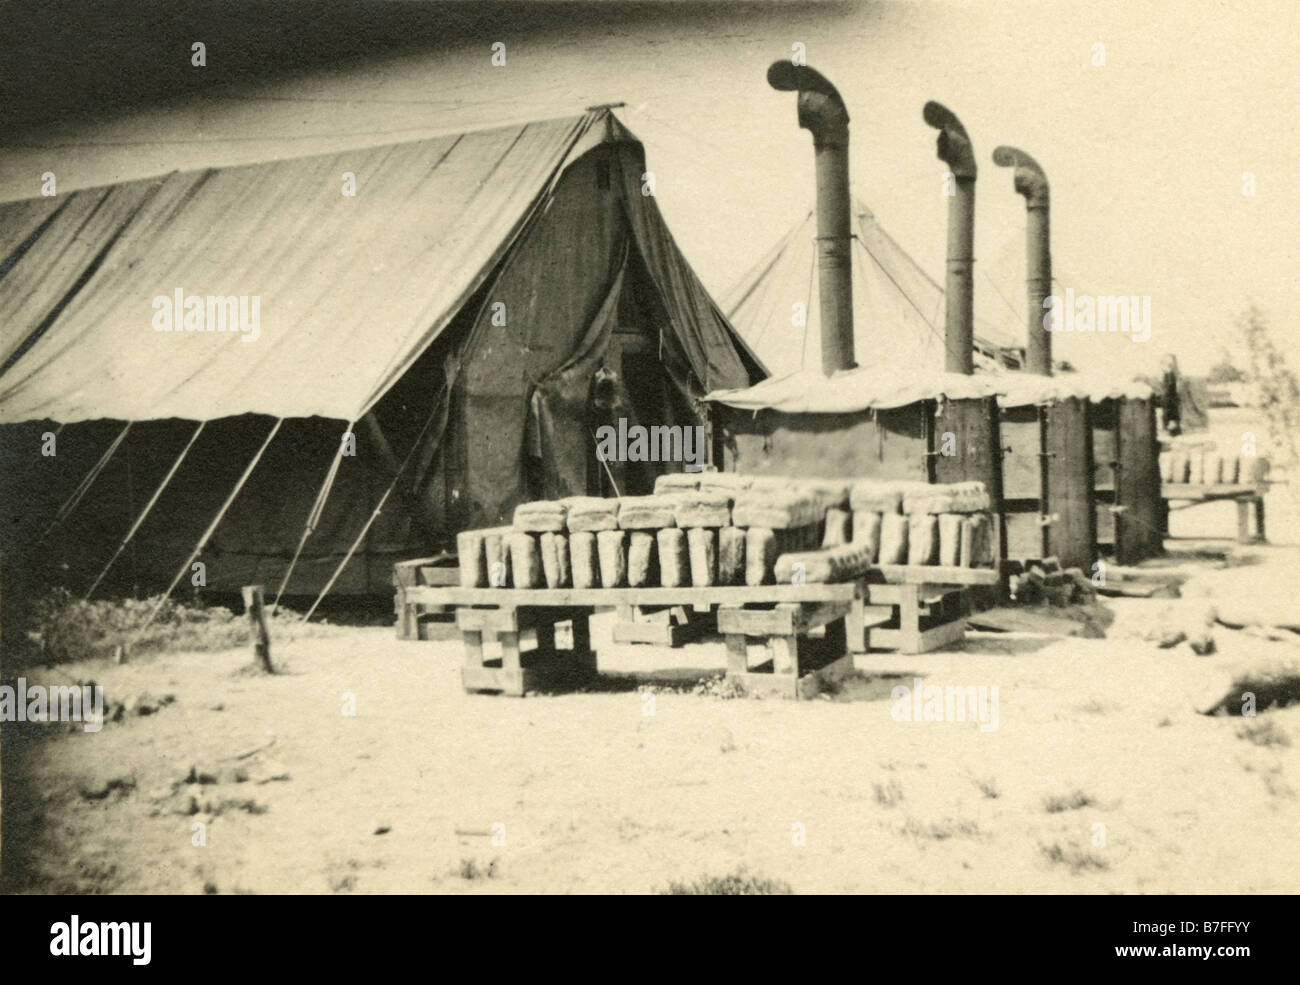 Foto aus dem Jahr 1915, Camp Cotton Field Bakery, US Quartermasters Corps, in der Nähe von El Paso, Texas. Stockfoto